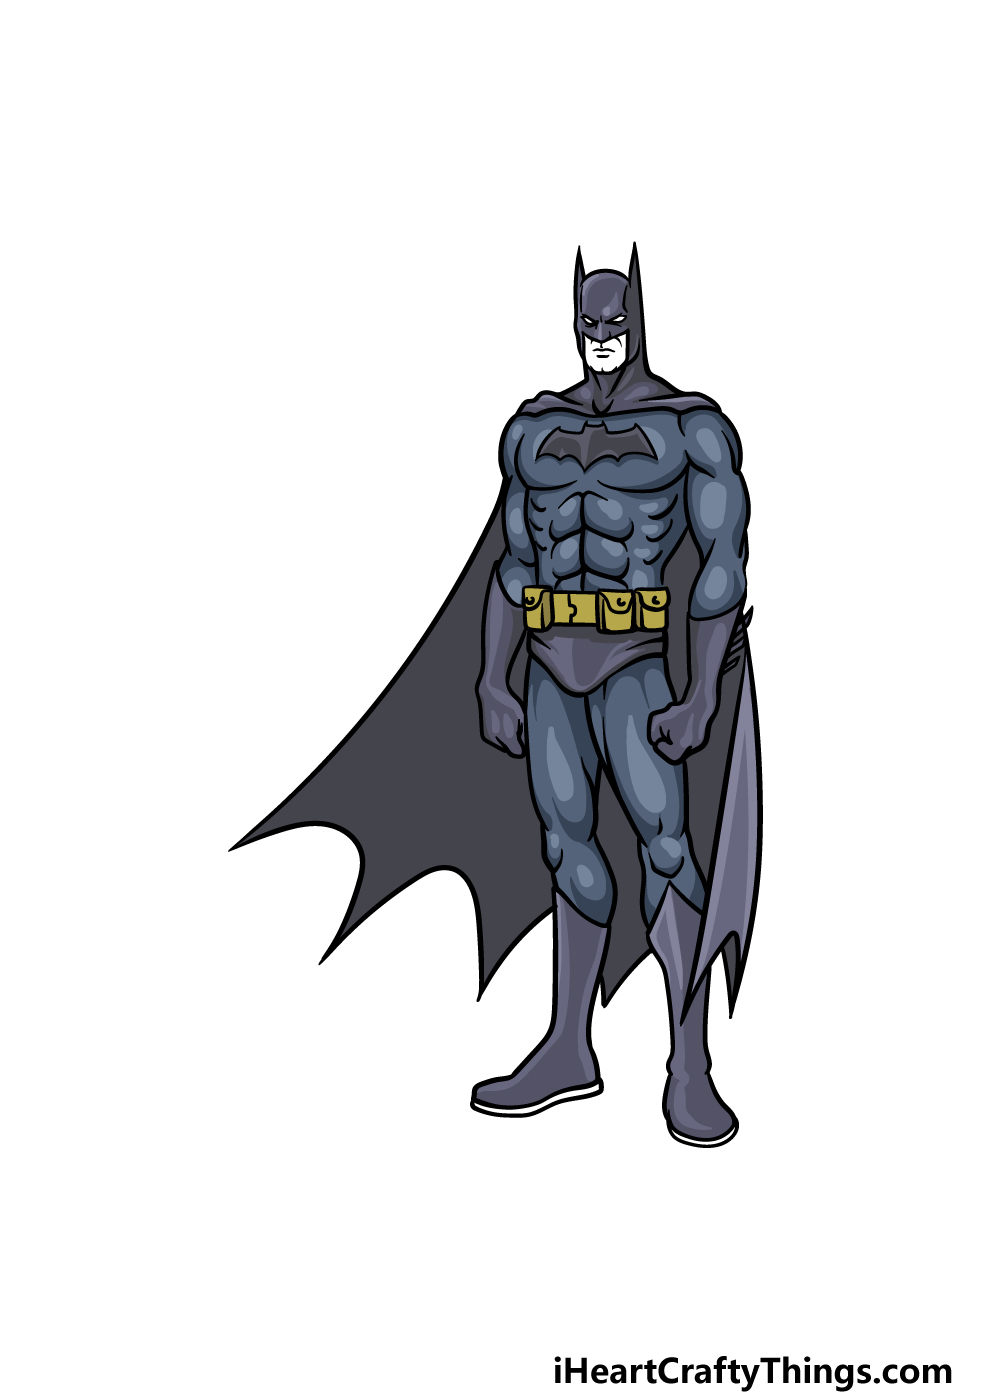 Batman cartoon pic, Batman Joker Logo - PNG IMG TREE